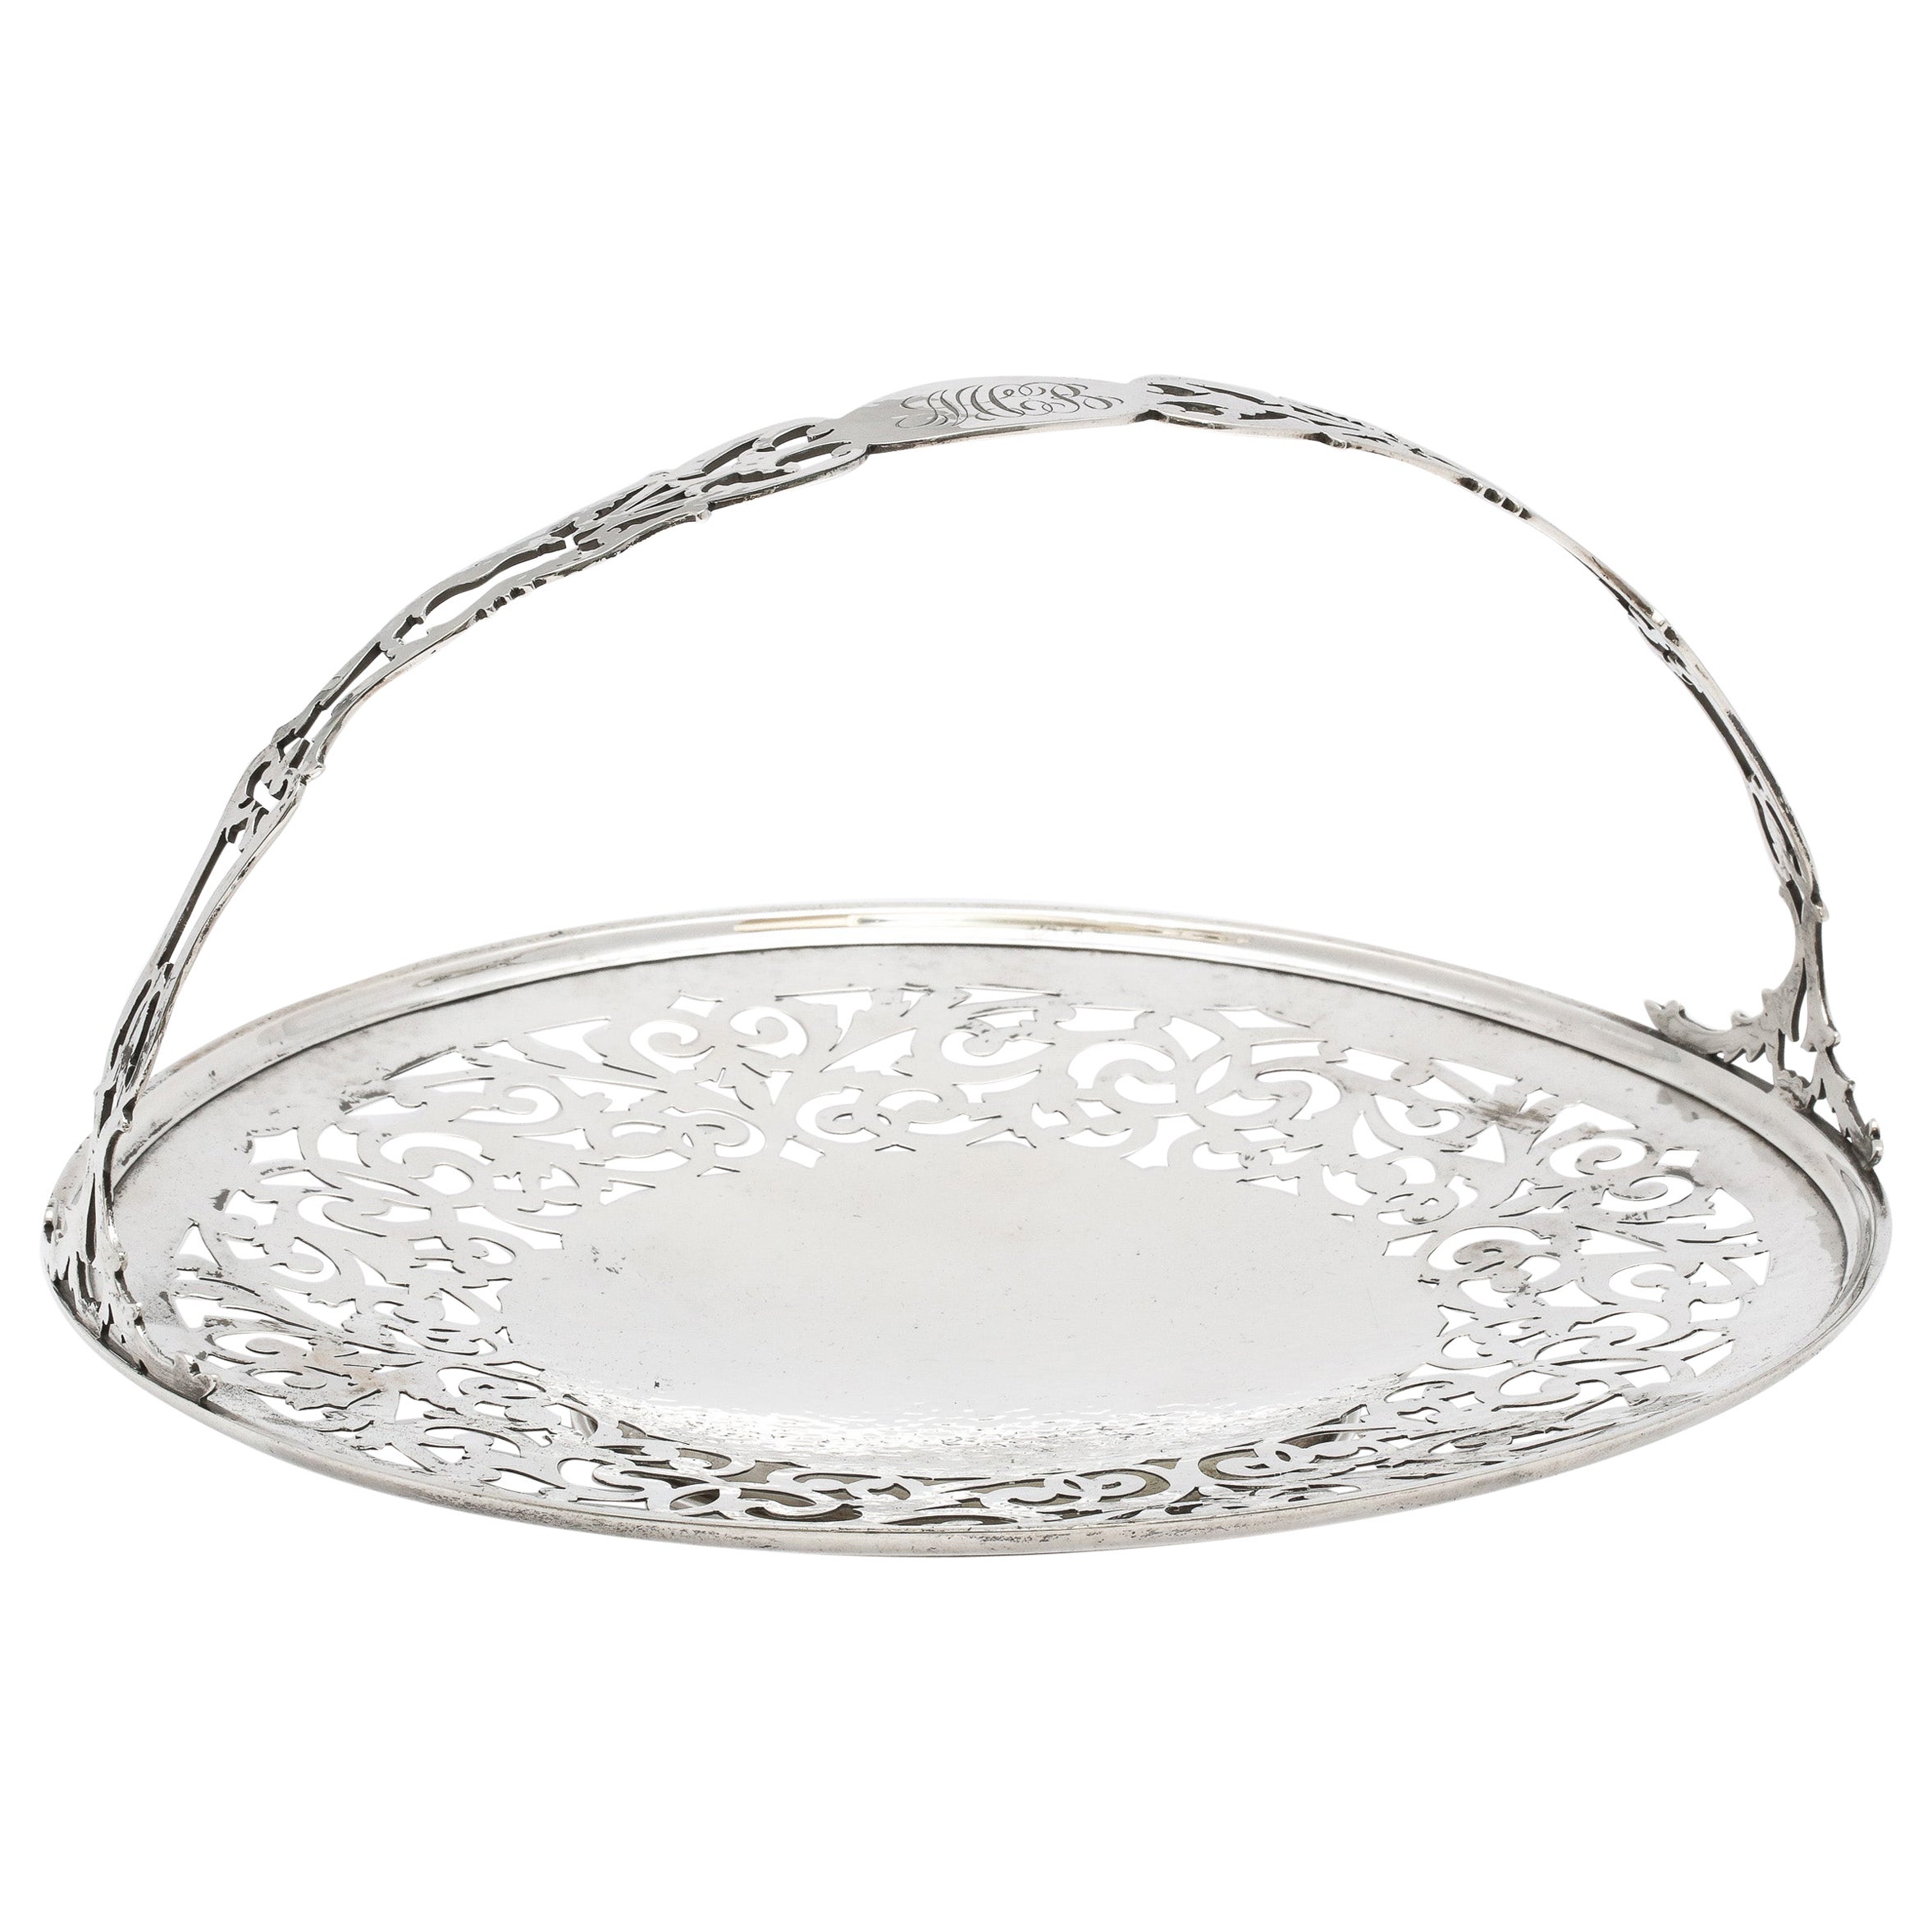 Art Nouveau Sterling Silver Pedestal Based Pierced Cake/Cookie Basket/Platter For Sale